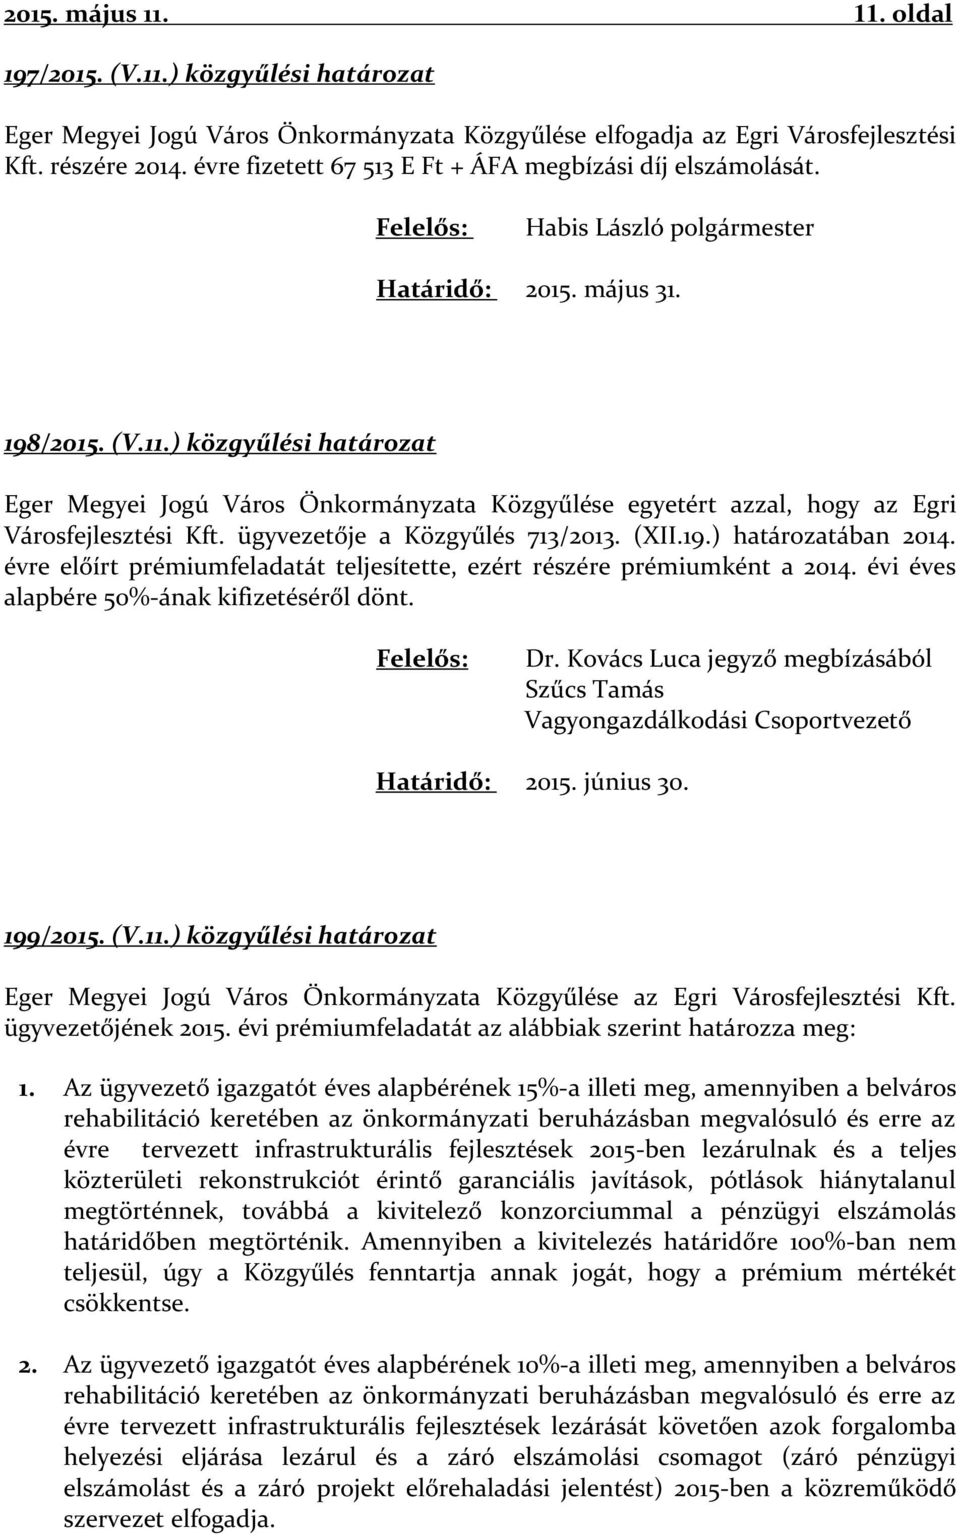 ) közgyűlési határozat Eger Megyei Jogú Város Önkormányzata Közgyűlése egyetért azzal, hogy az Egri Városfejlesztési Kft. ügyvezetője a Közgyűlés 713/2013. (XII.19.) határozatában 2014.